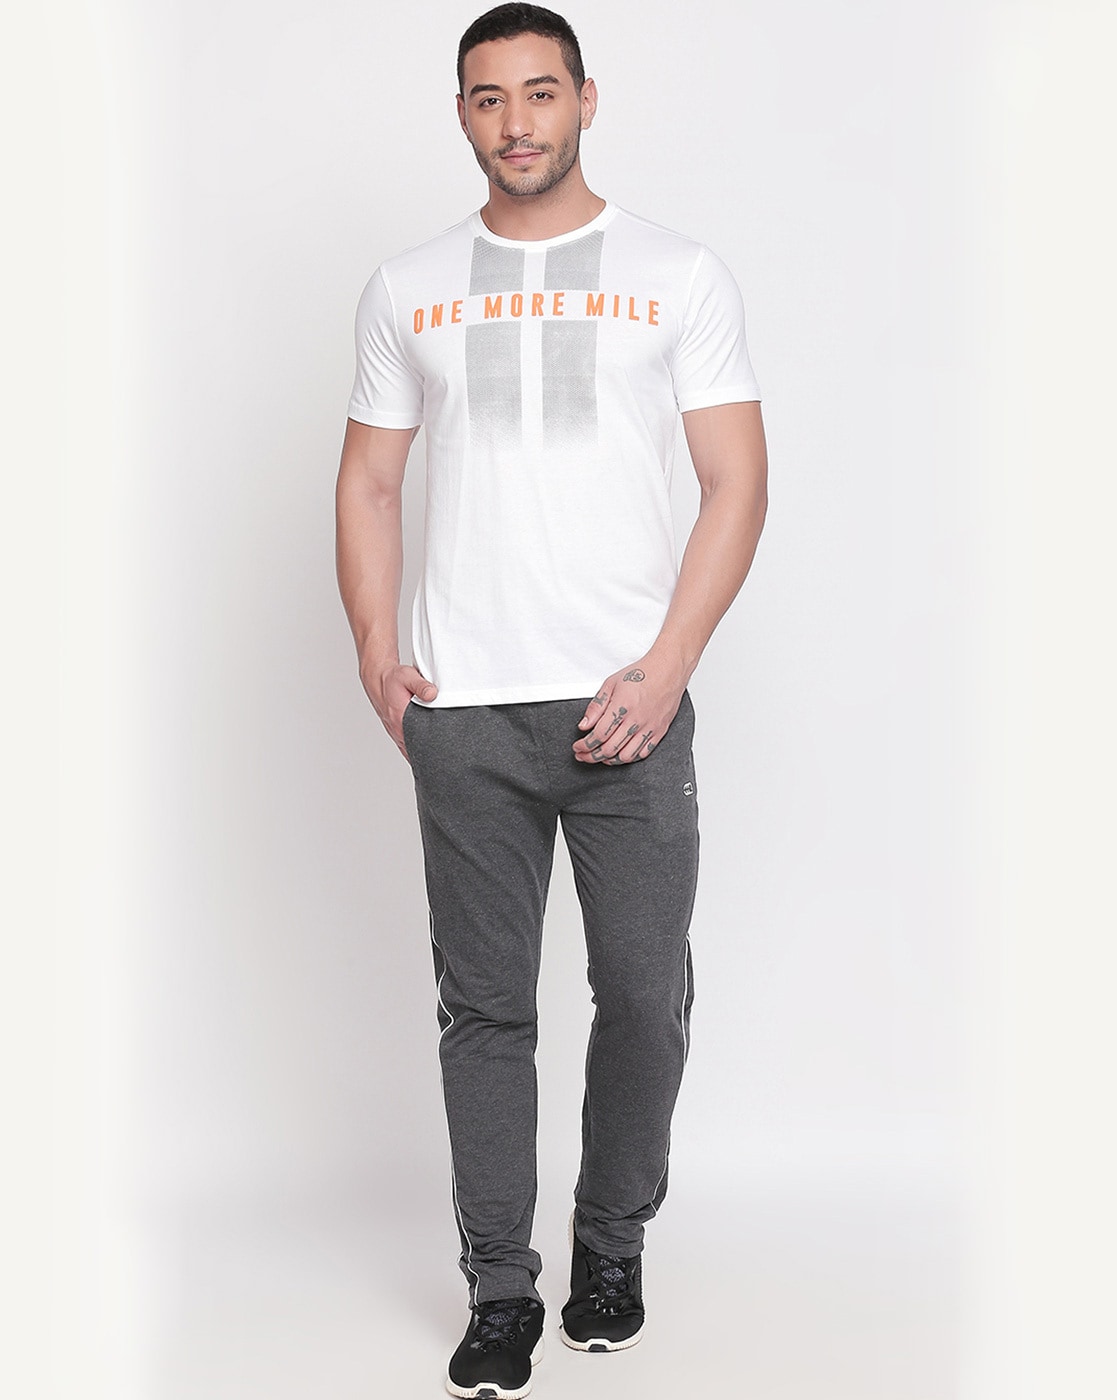 Pantaloons White T-Shirt - Selling Fast at